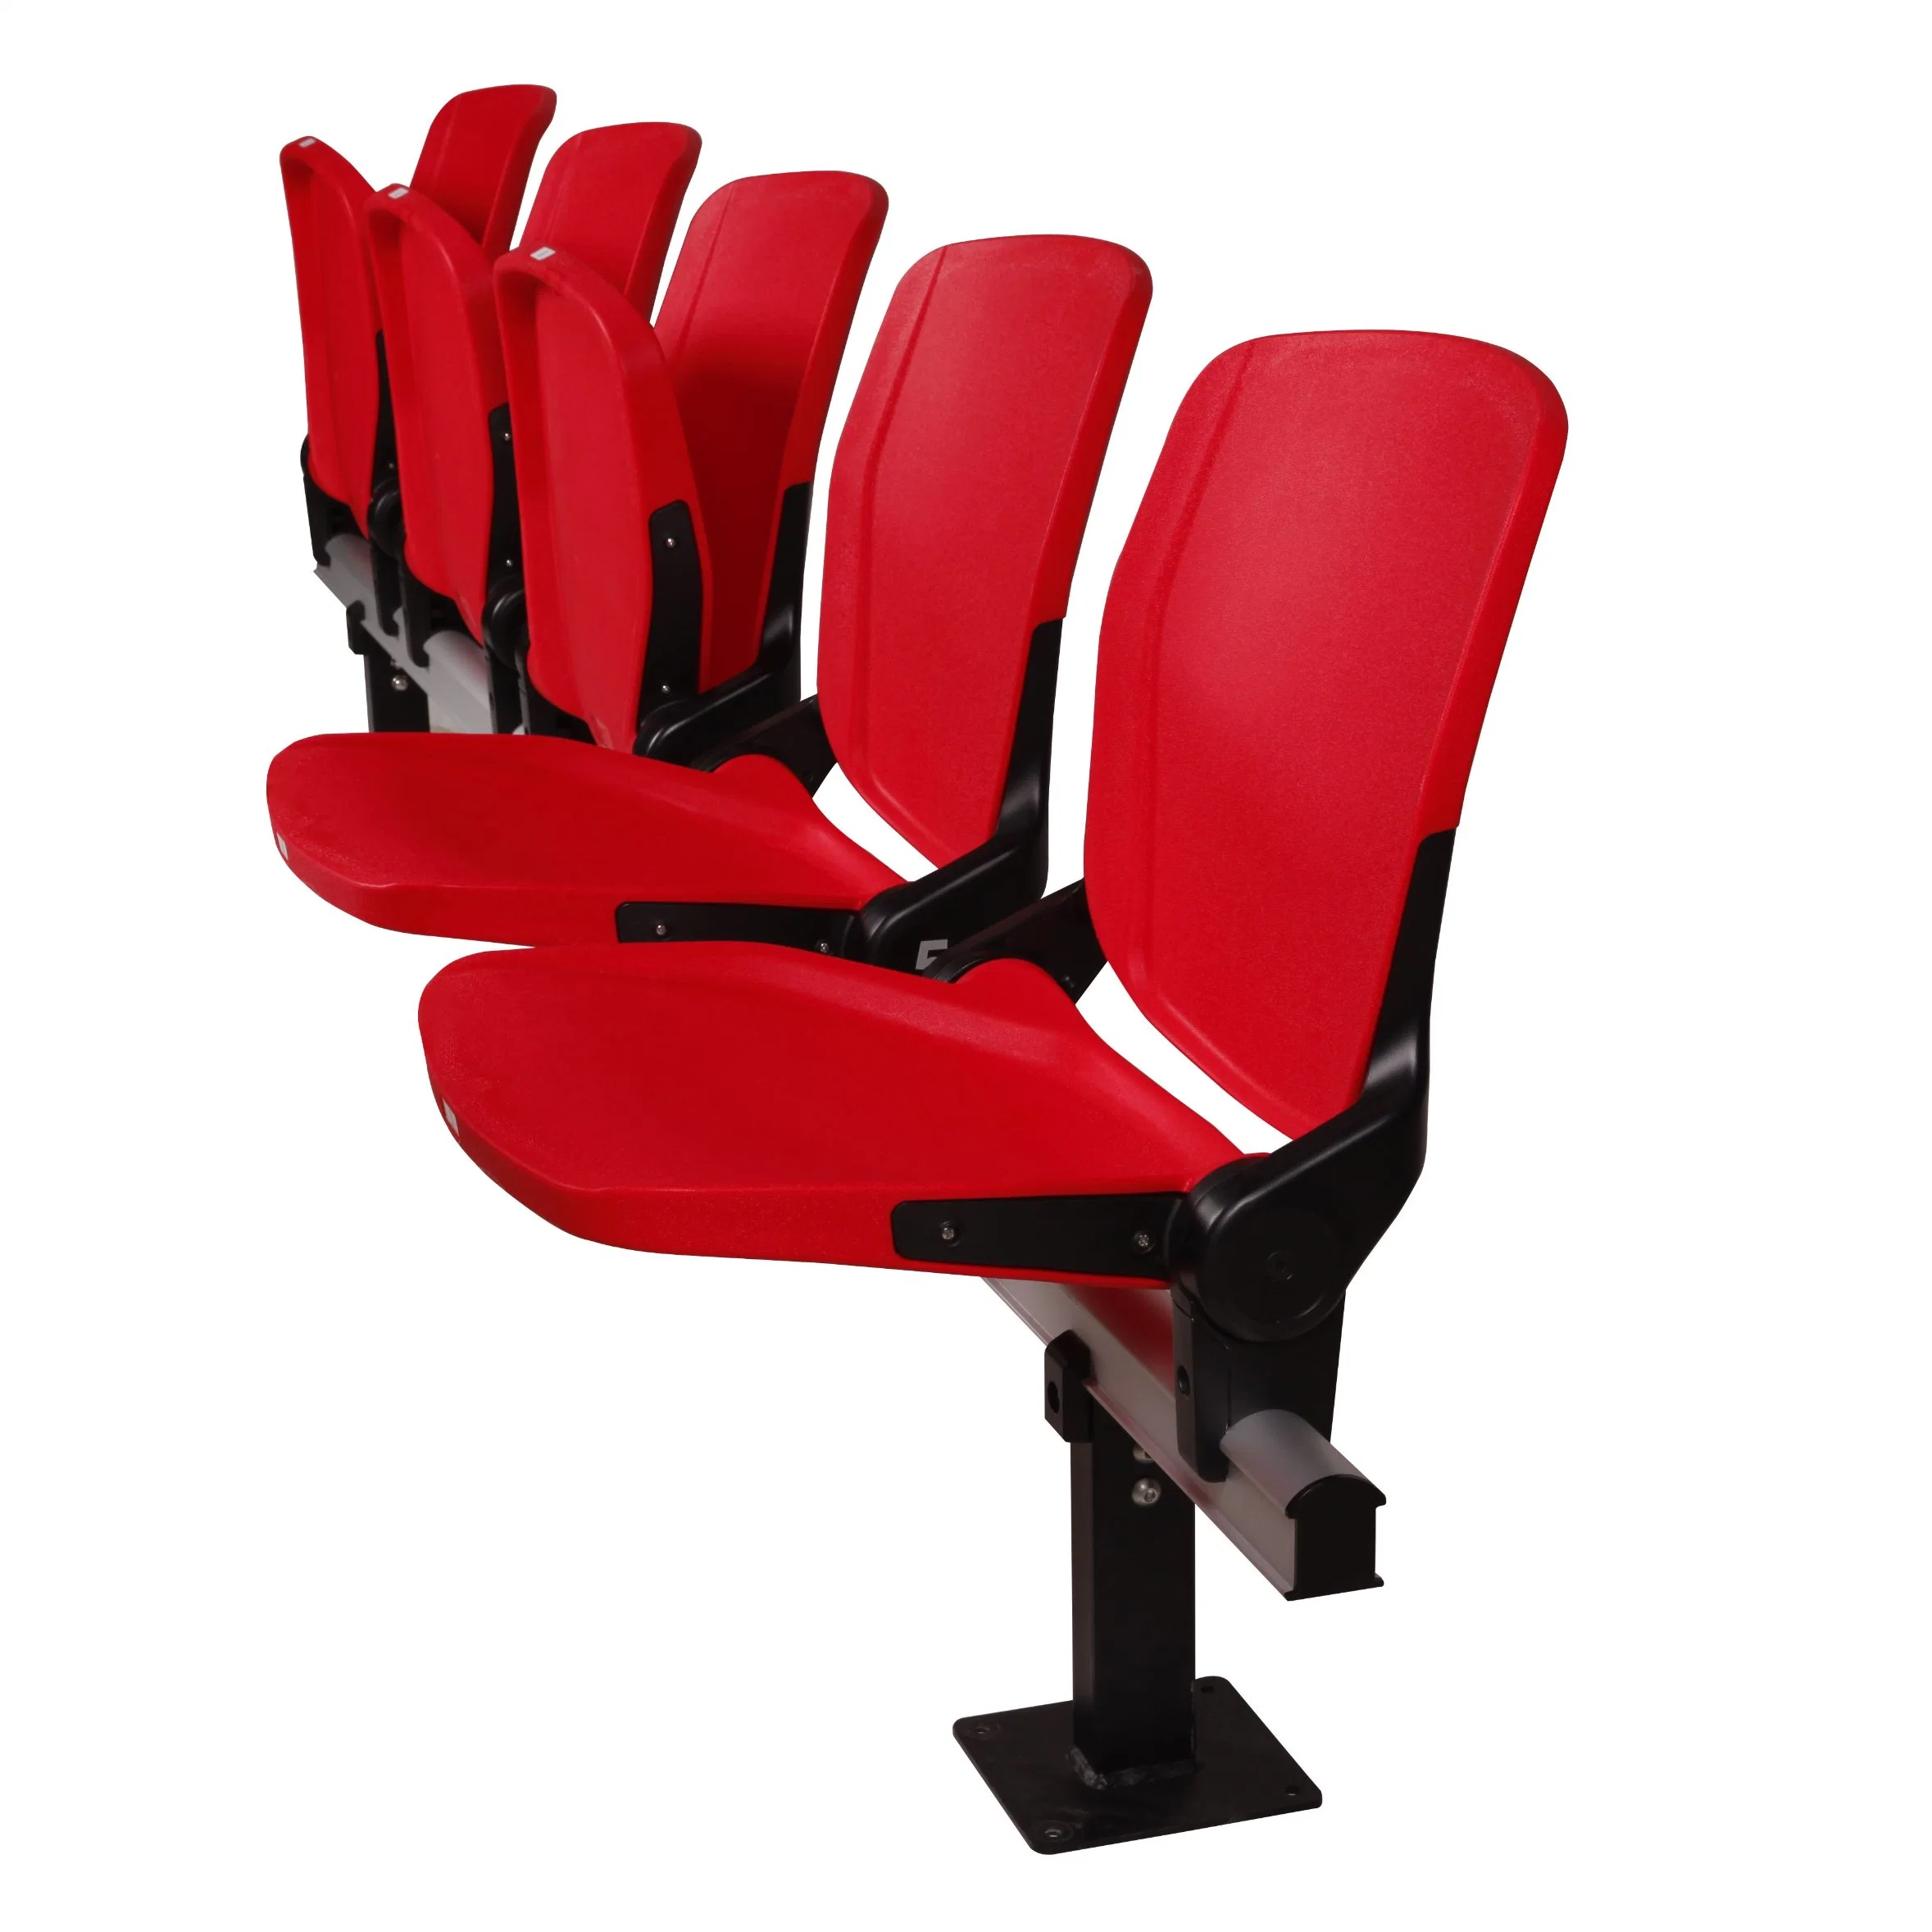 2022 New Indoor Church University Classroom Lecture Office Auditorium Cinema Football Seat Auditorium Stadium Tip up Chair